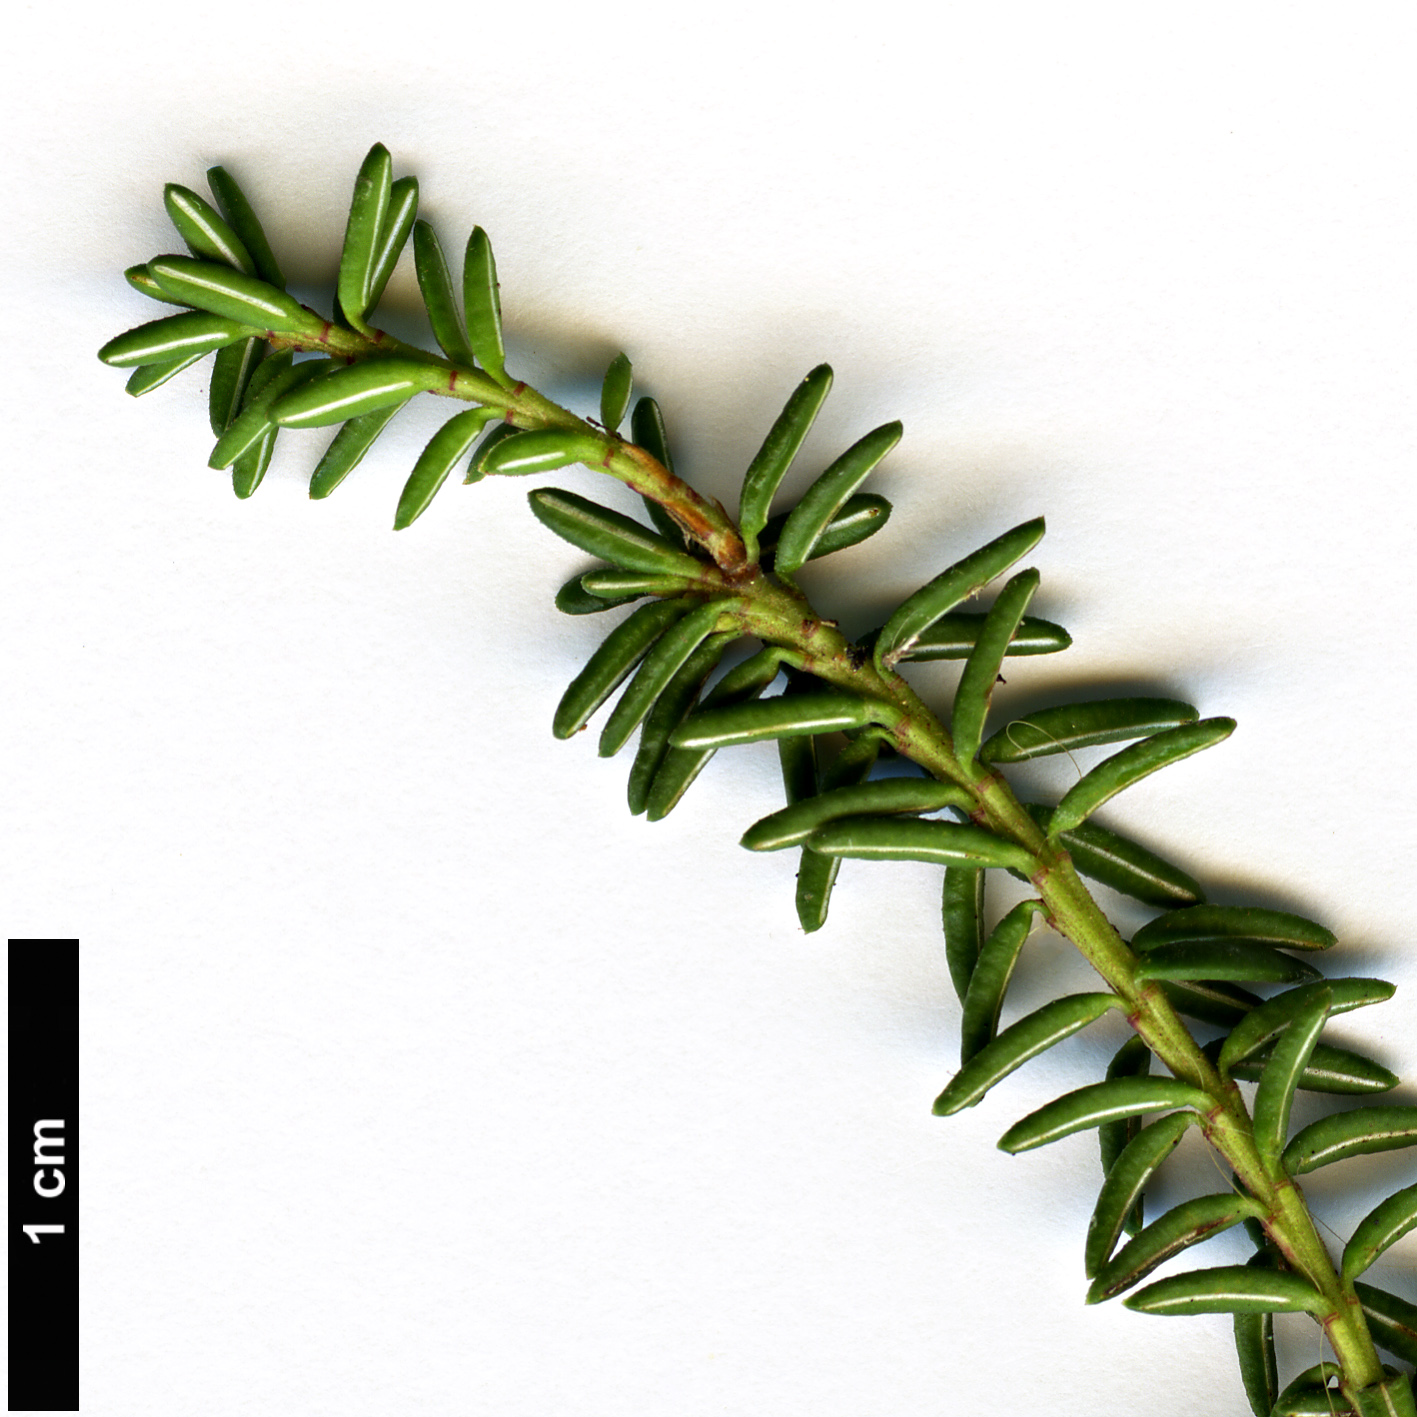 High resolution image: Family: Ericaceae - Genus: Empetrum - Taxon: nigrum